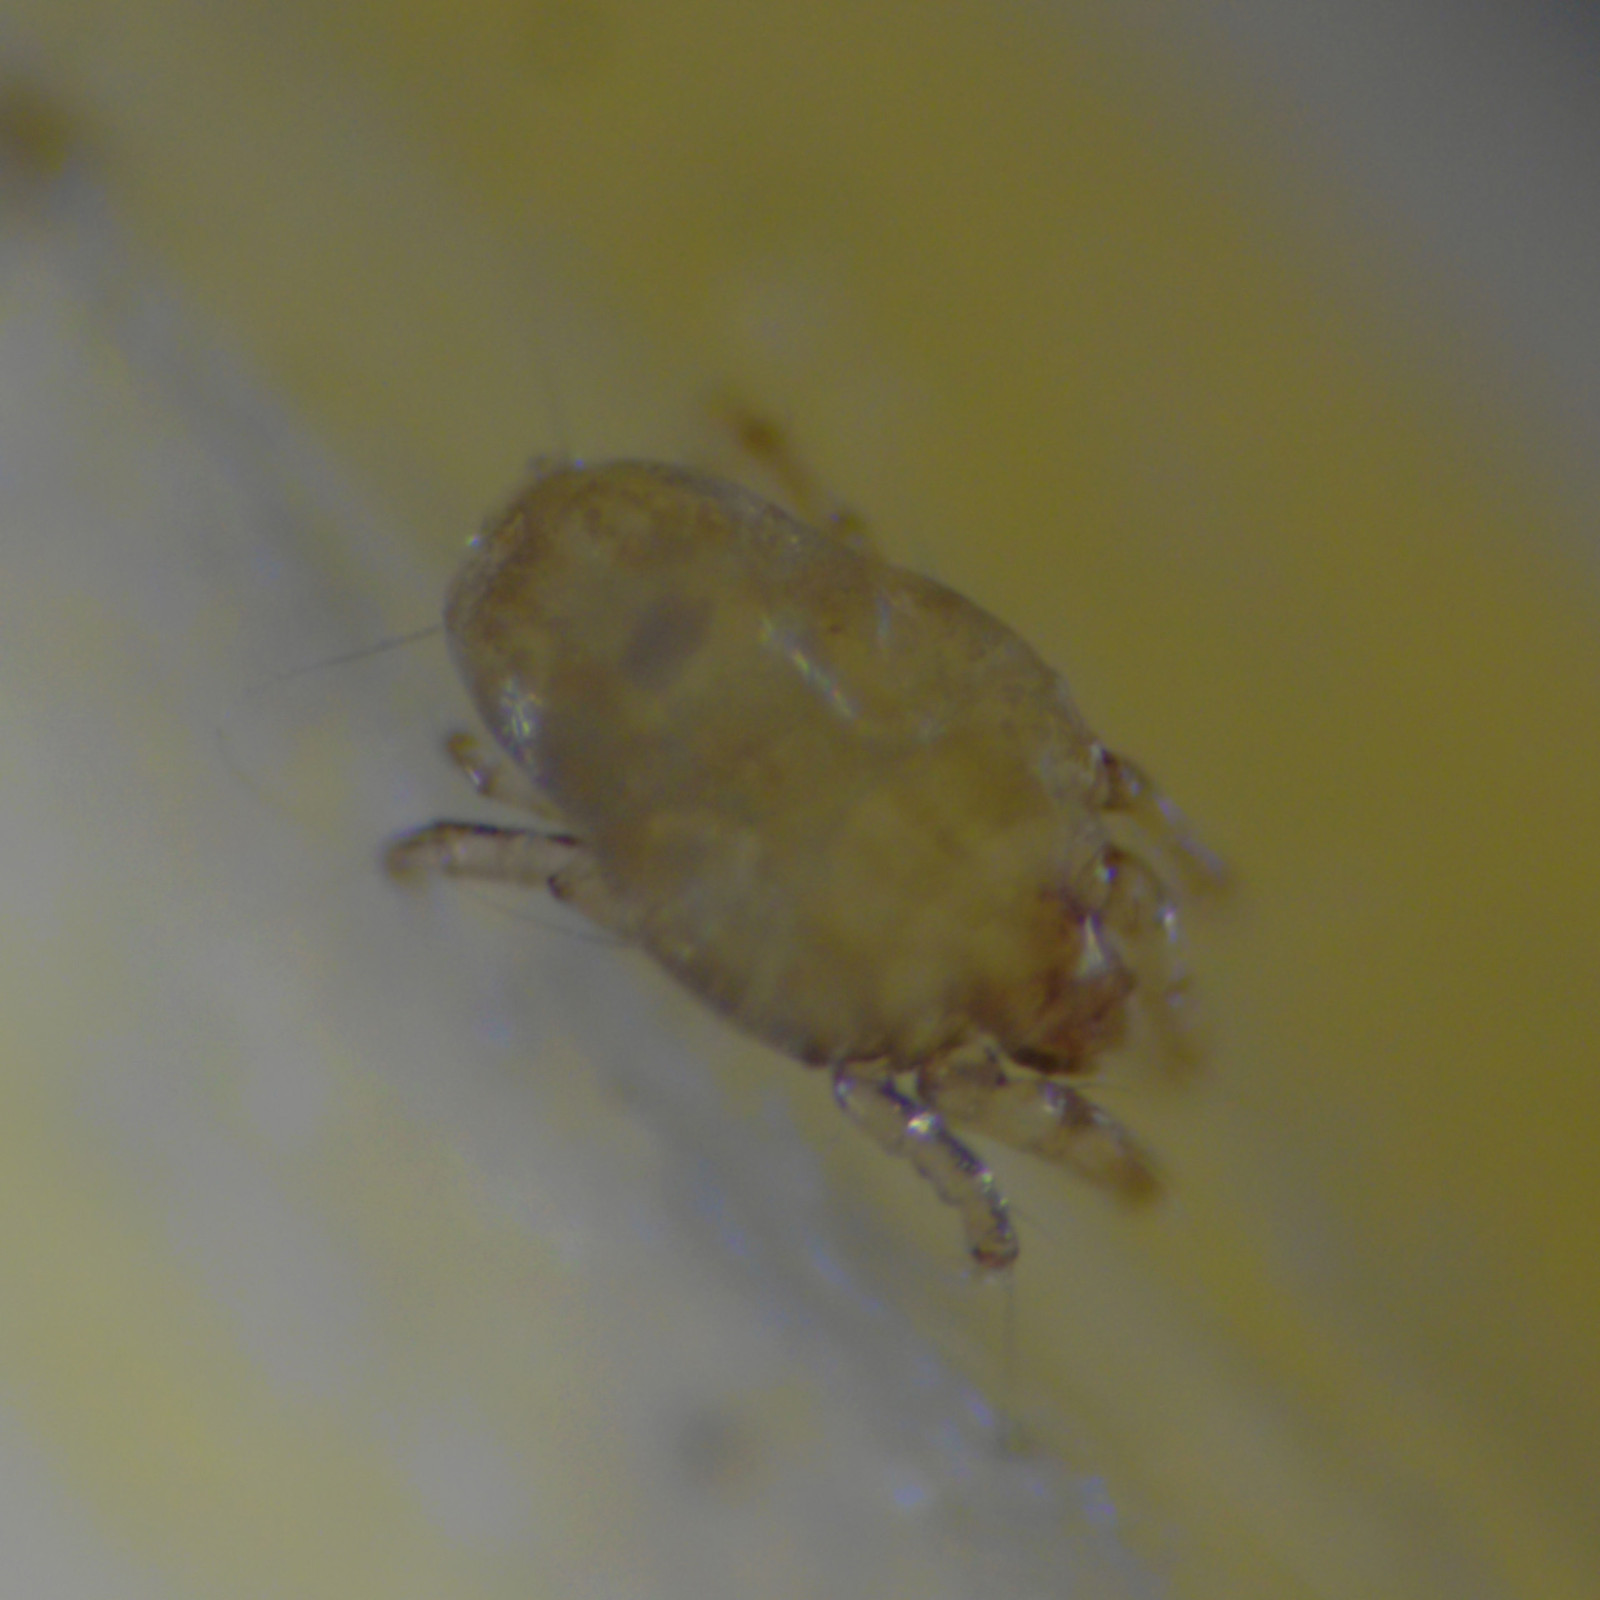 Mite under microscope